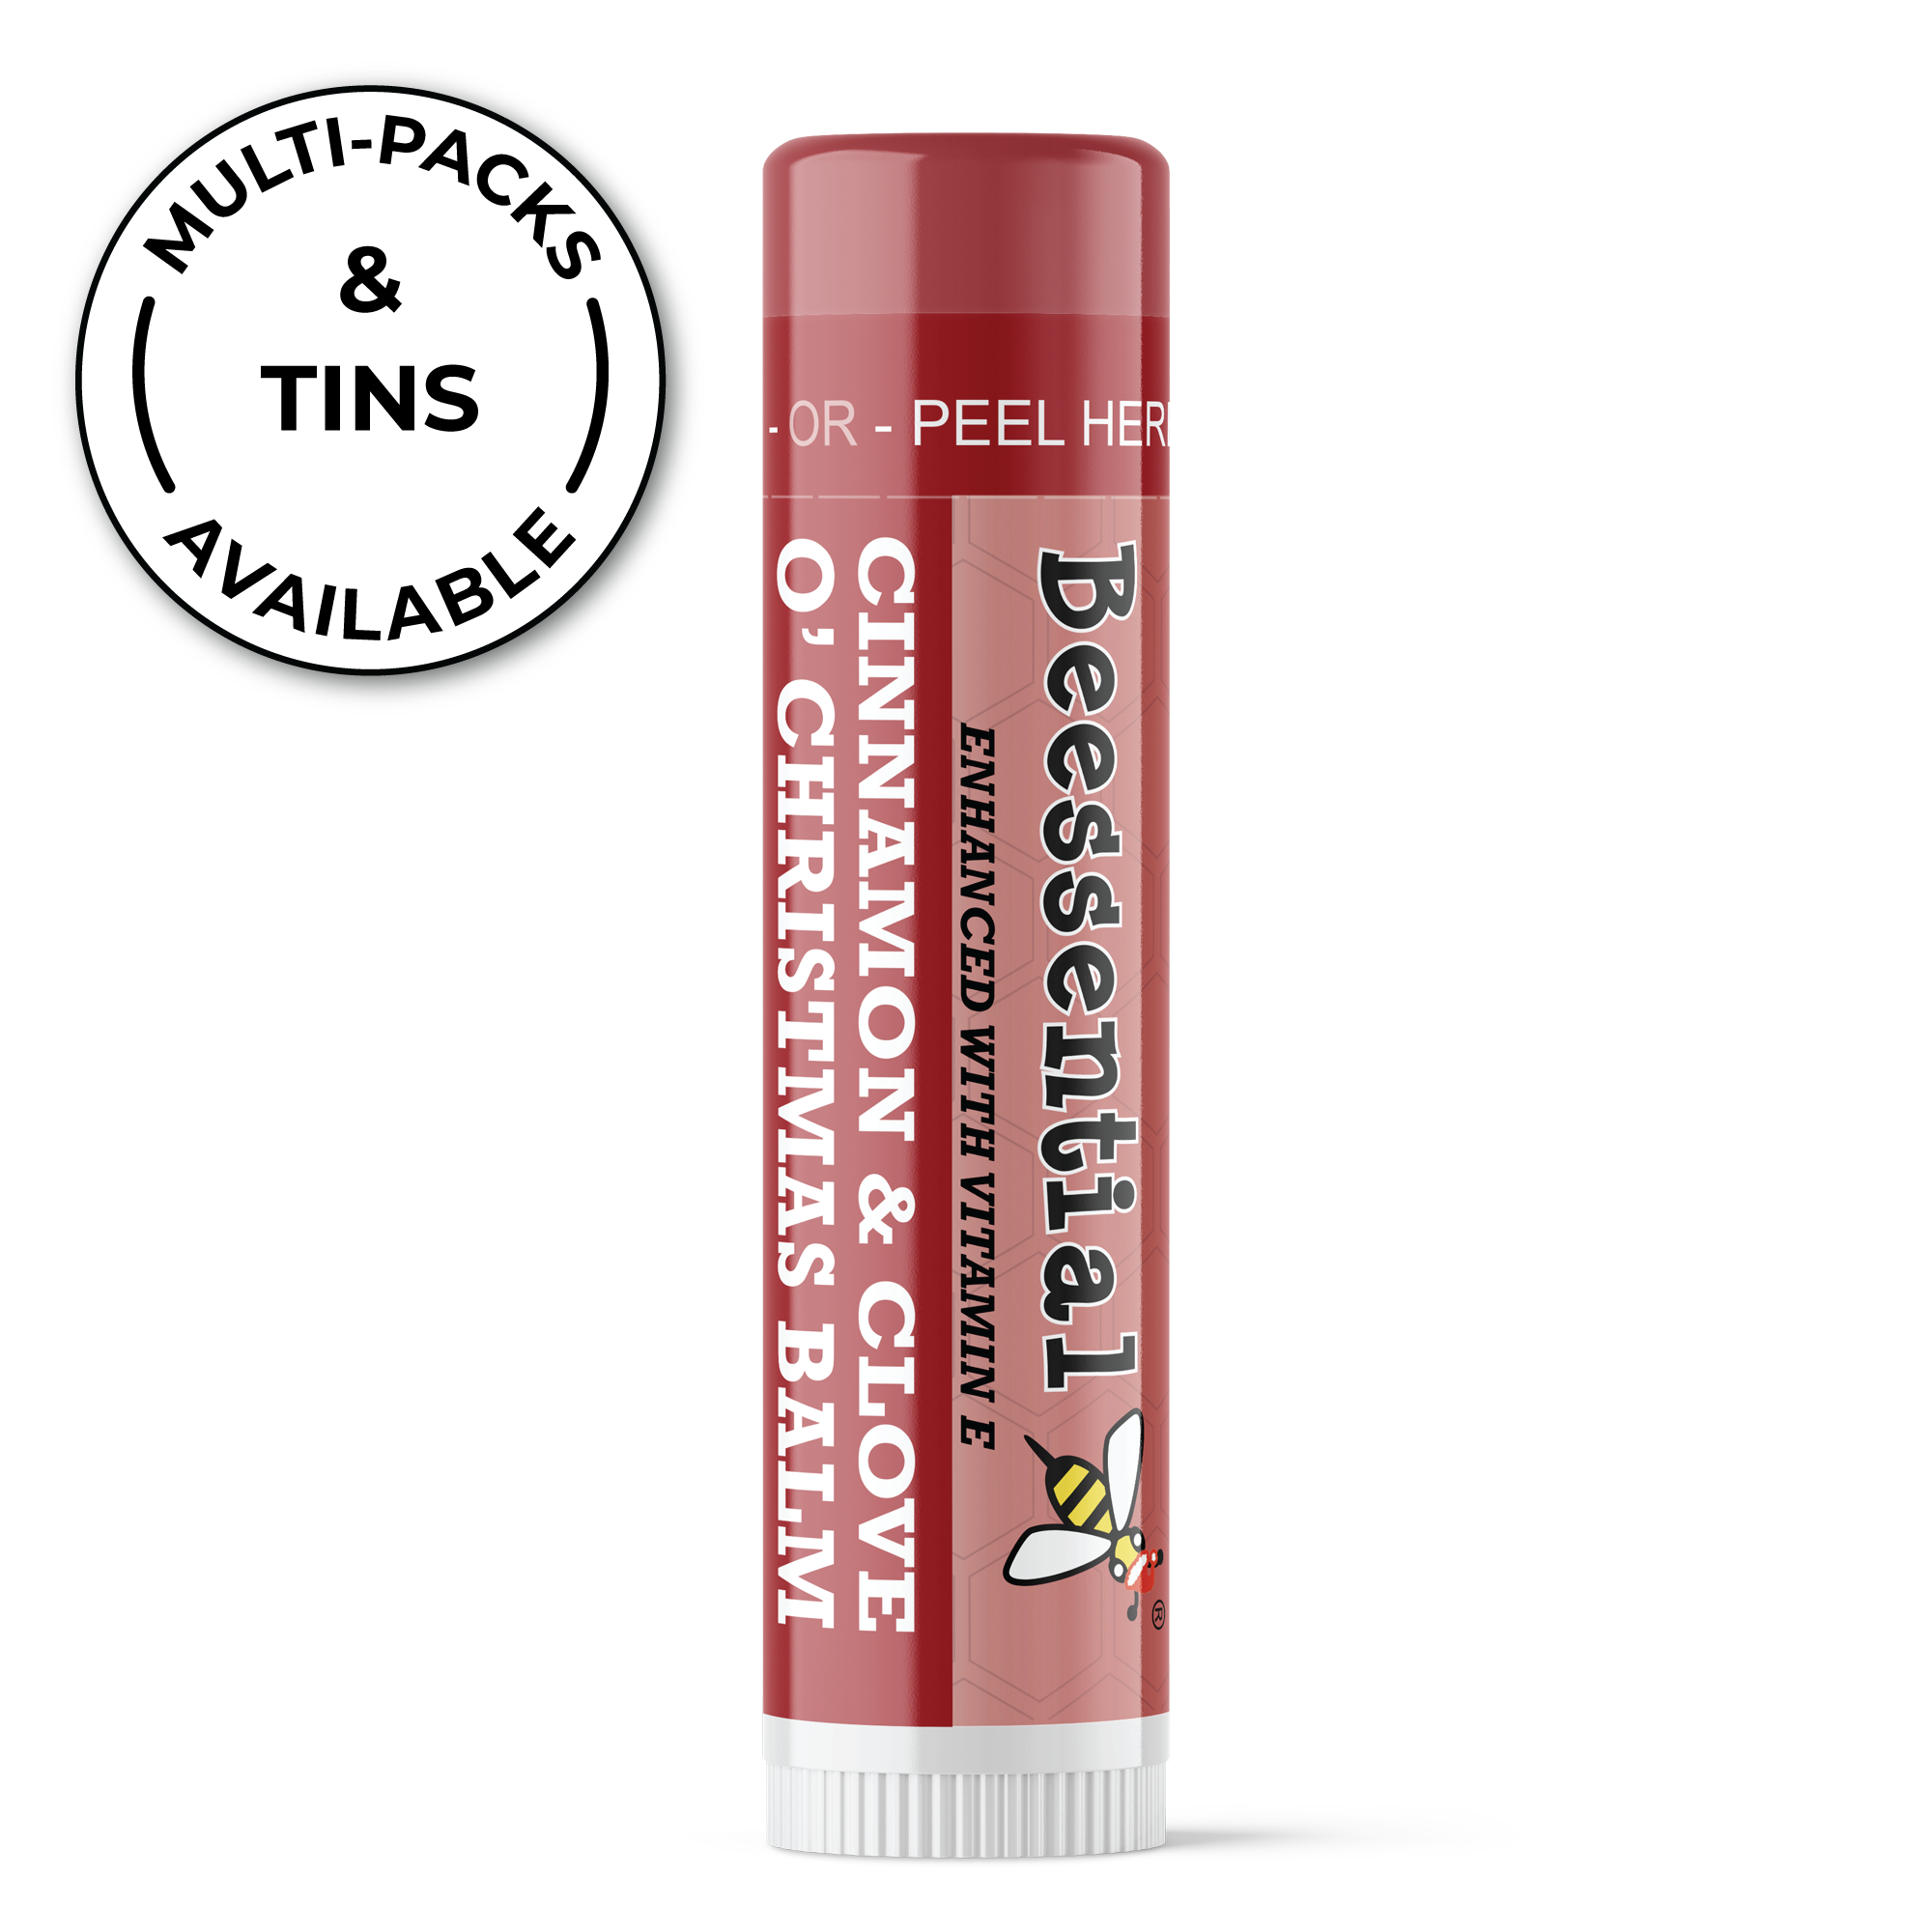 Cinnamon Beeswax Lip Balm - HOTLIX